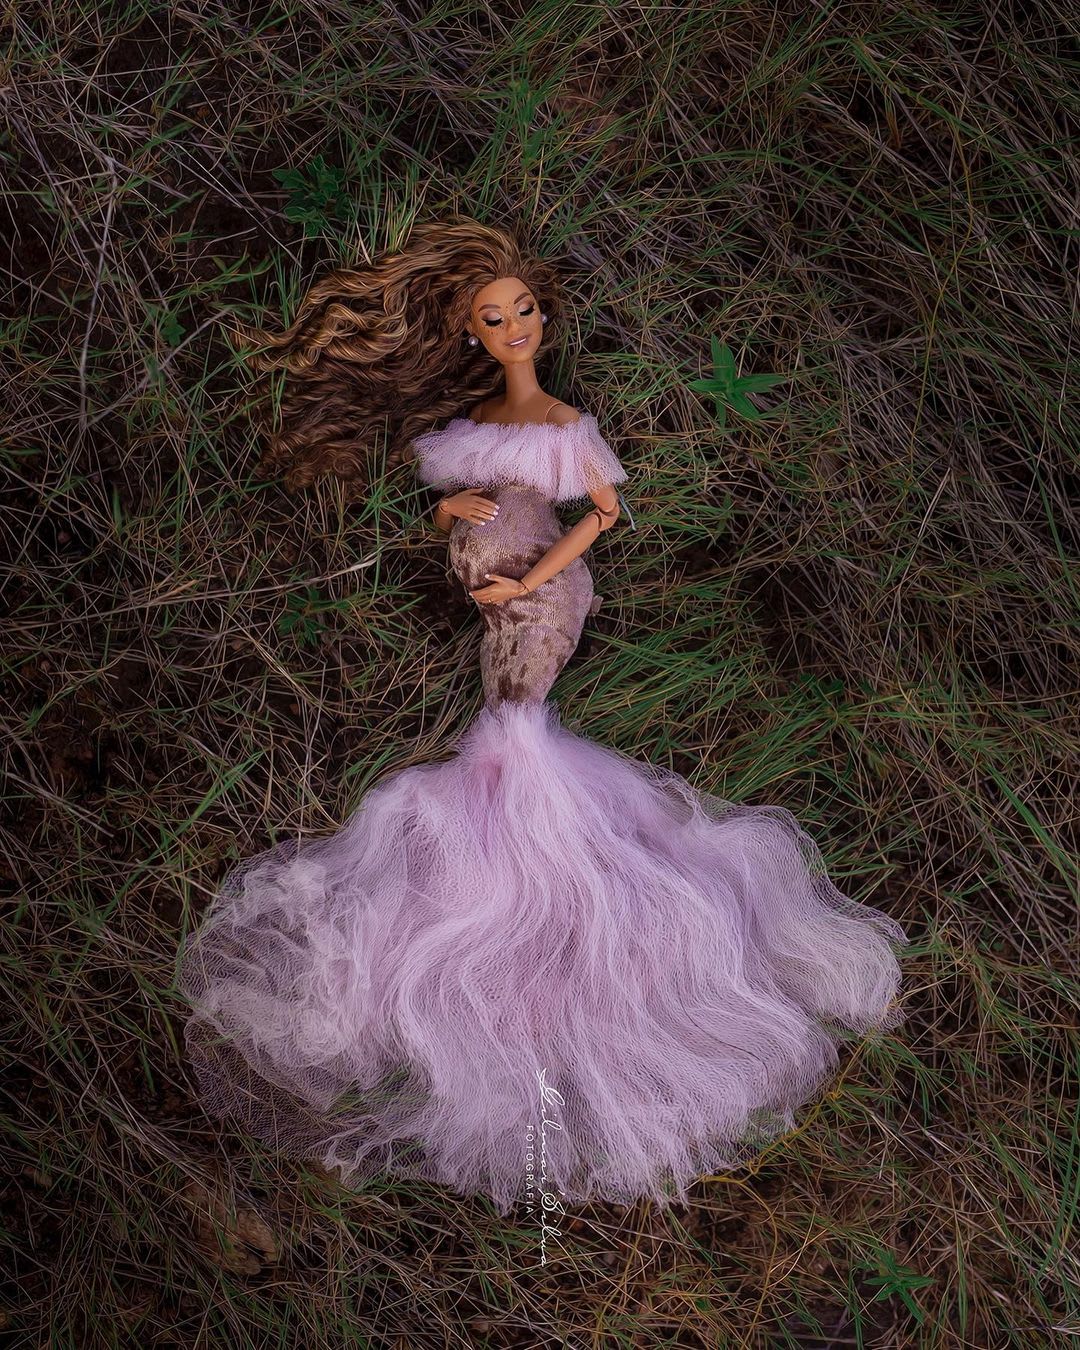 Barbie participa de ensaio de gestante em ideia de fotógrafo brasileiro -  20/05/2019 - UOL Universa